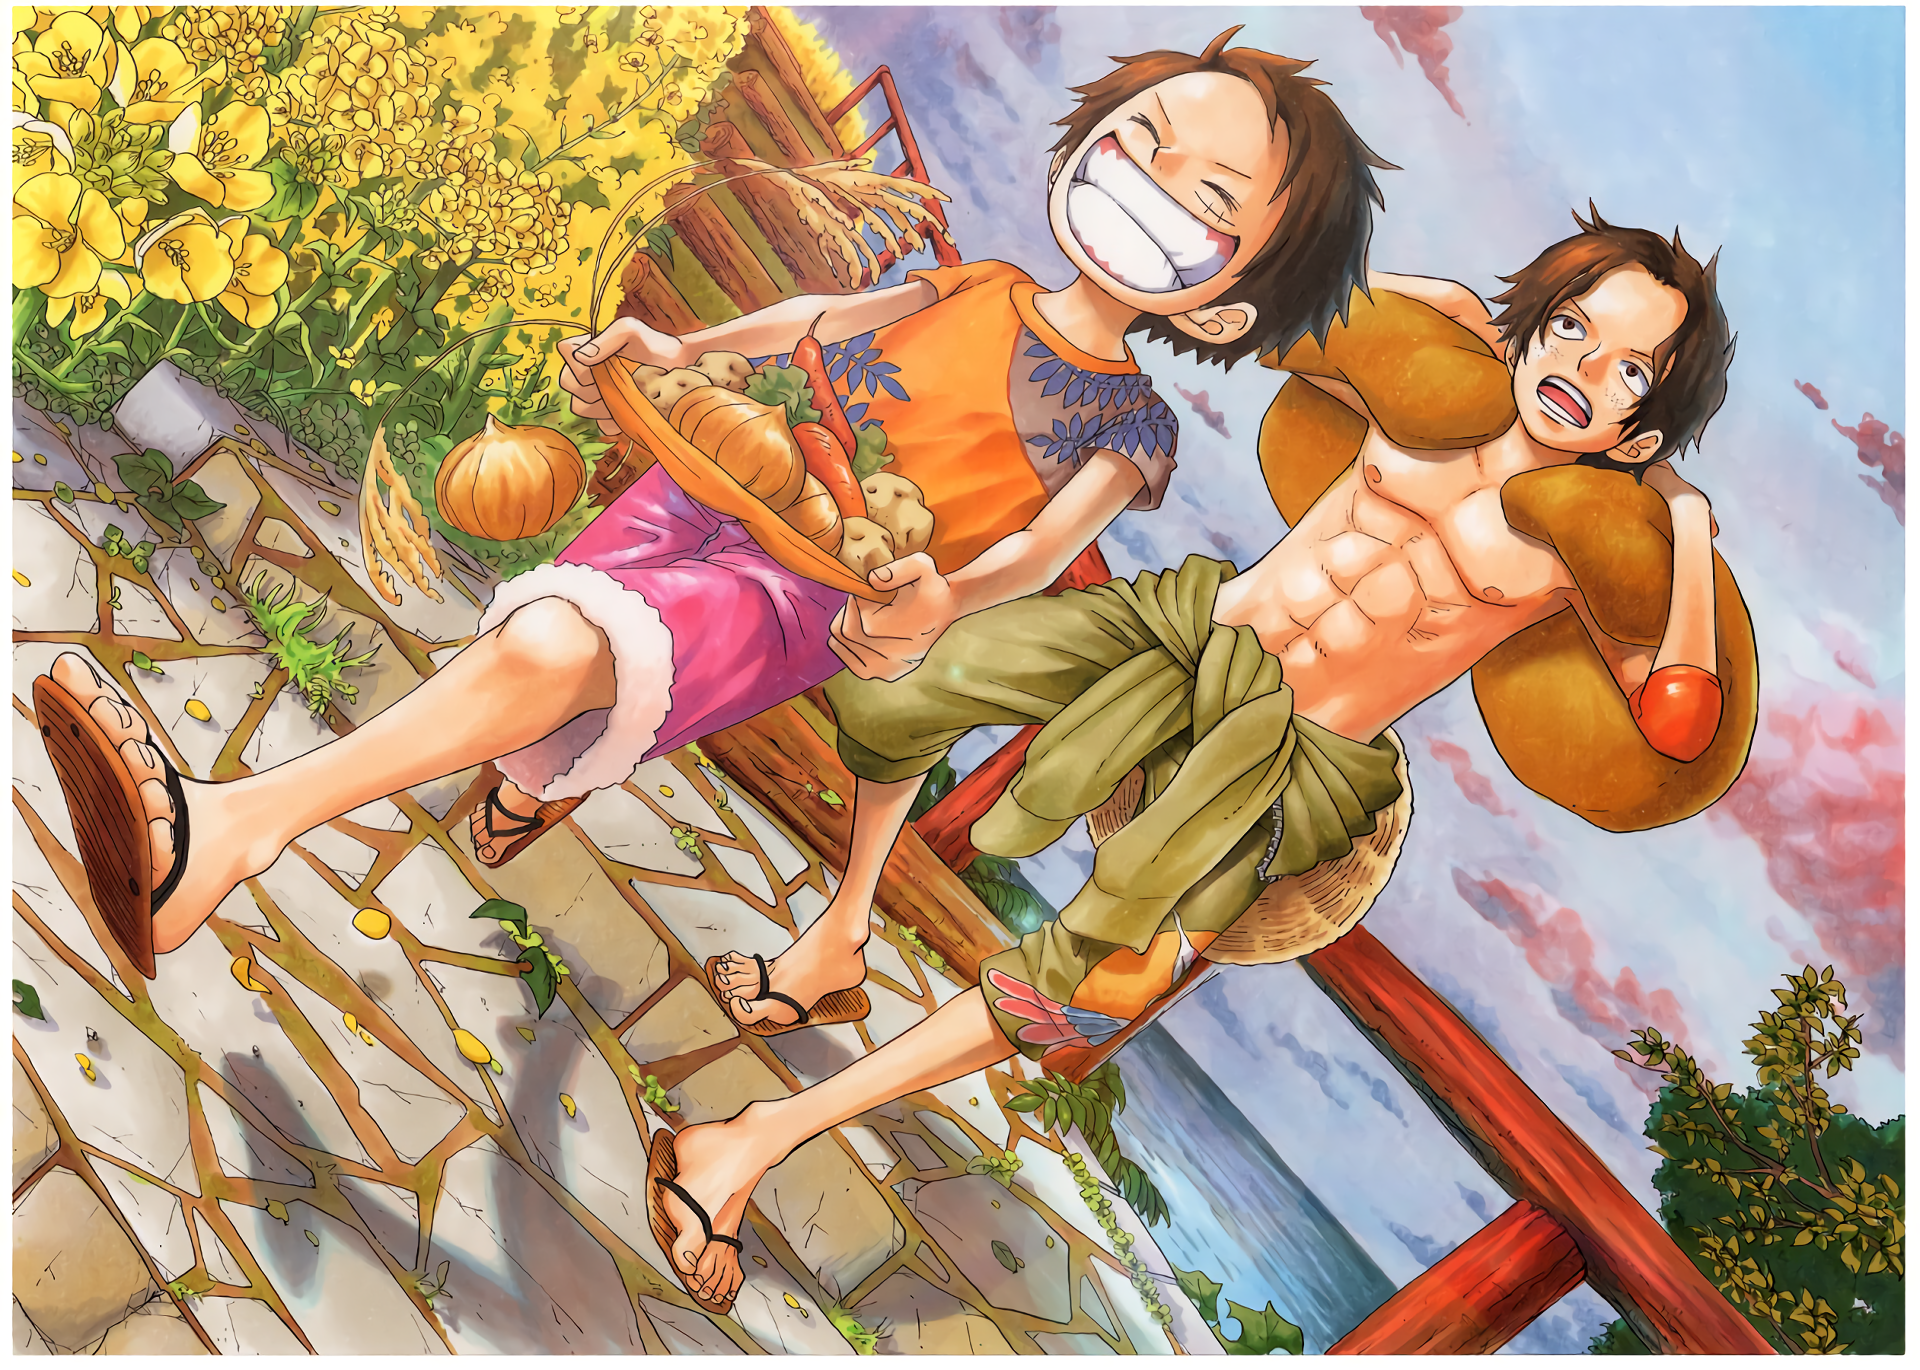 Hãy cùng xem ảnh về Monkey D. Luffy - nhân vật chính của series One Piece! Với tính cách nghịch ngợm, mạnh mẽ và đầy tình yêu thương, Luffy là một trong những nhân vật anime/manga được yêu thích hàng đầu.